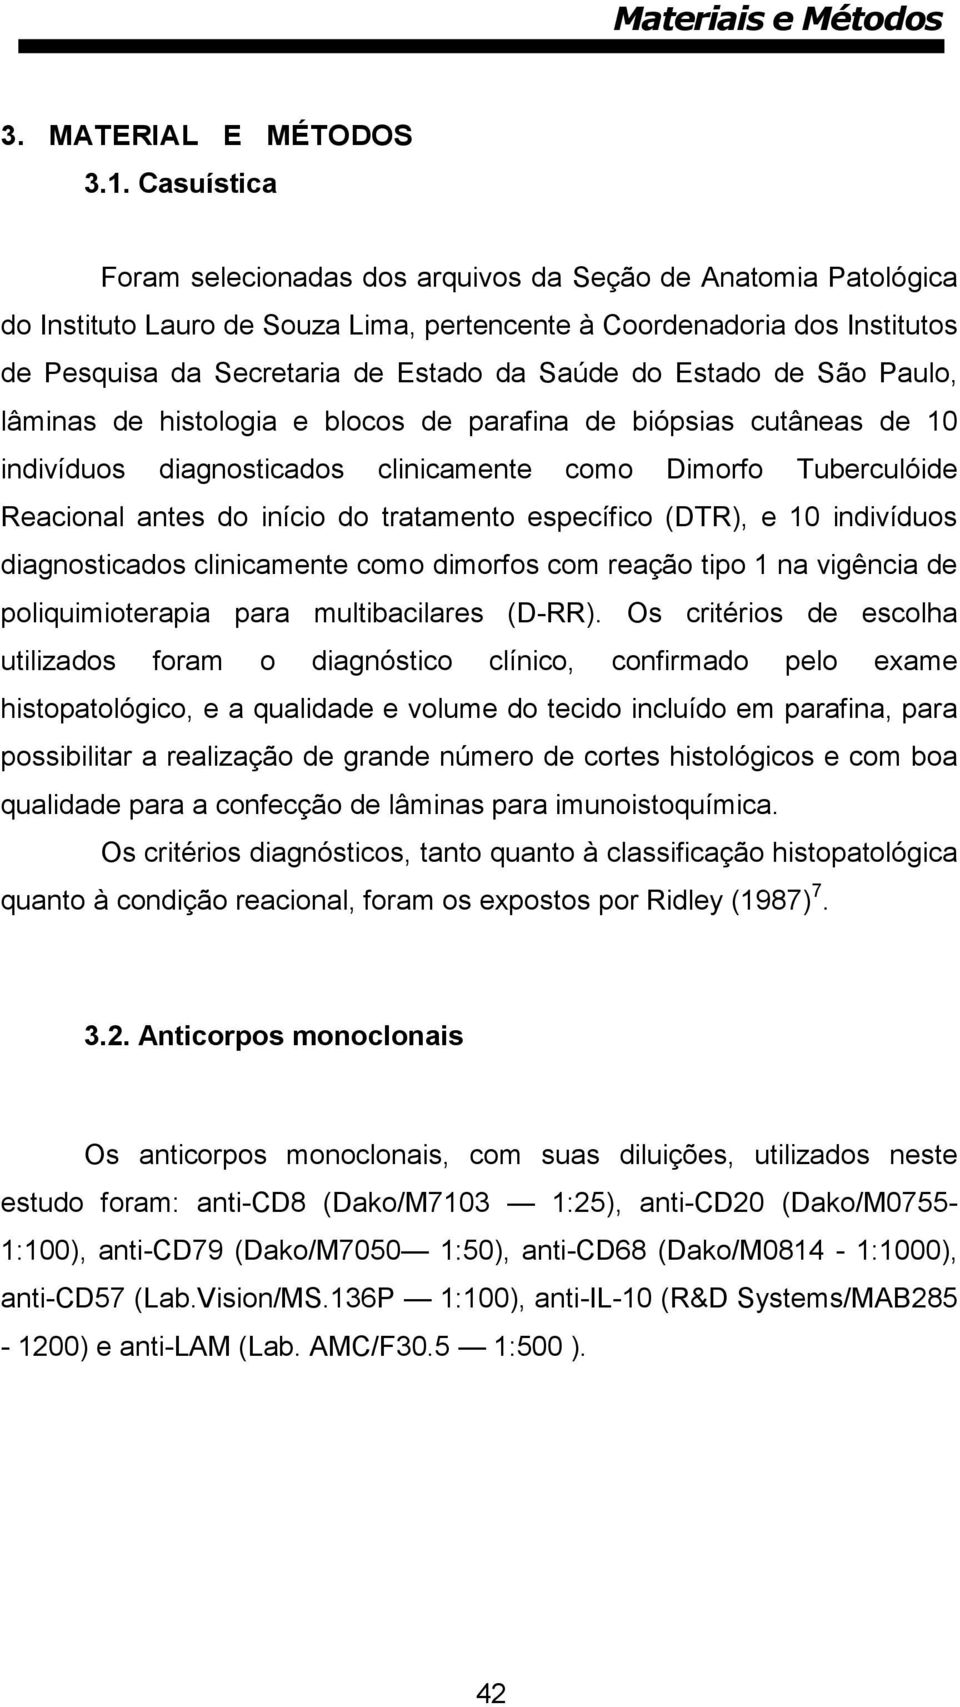 Estado de São Paulo, lâminas de histologia e blocos de parafina de biópsias cutâneas de 10 indivíduos diagnosticados clinicamente como Dimorfo Tuberculóide Reacional antes do início do tratamento